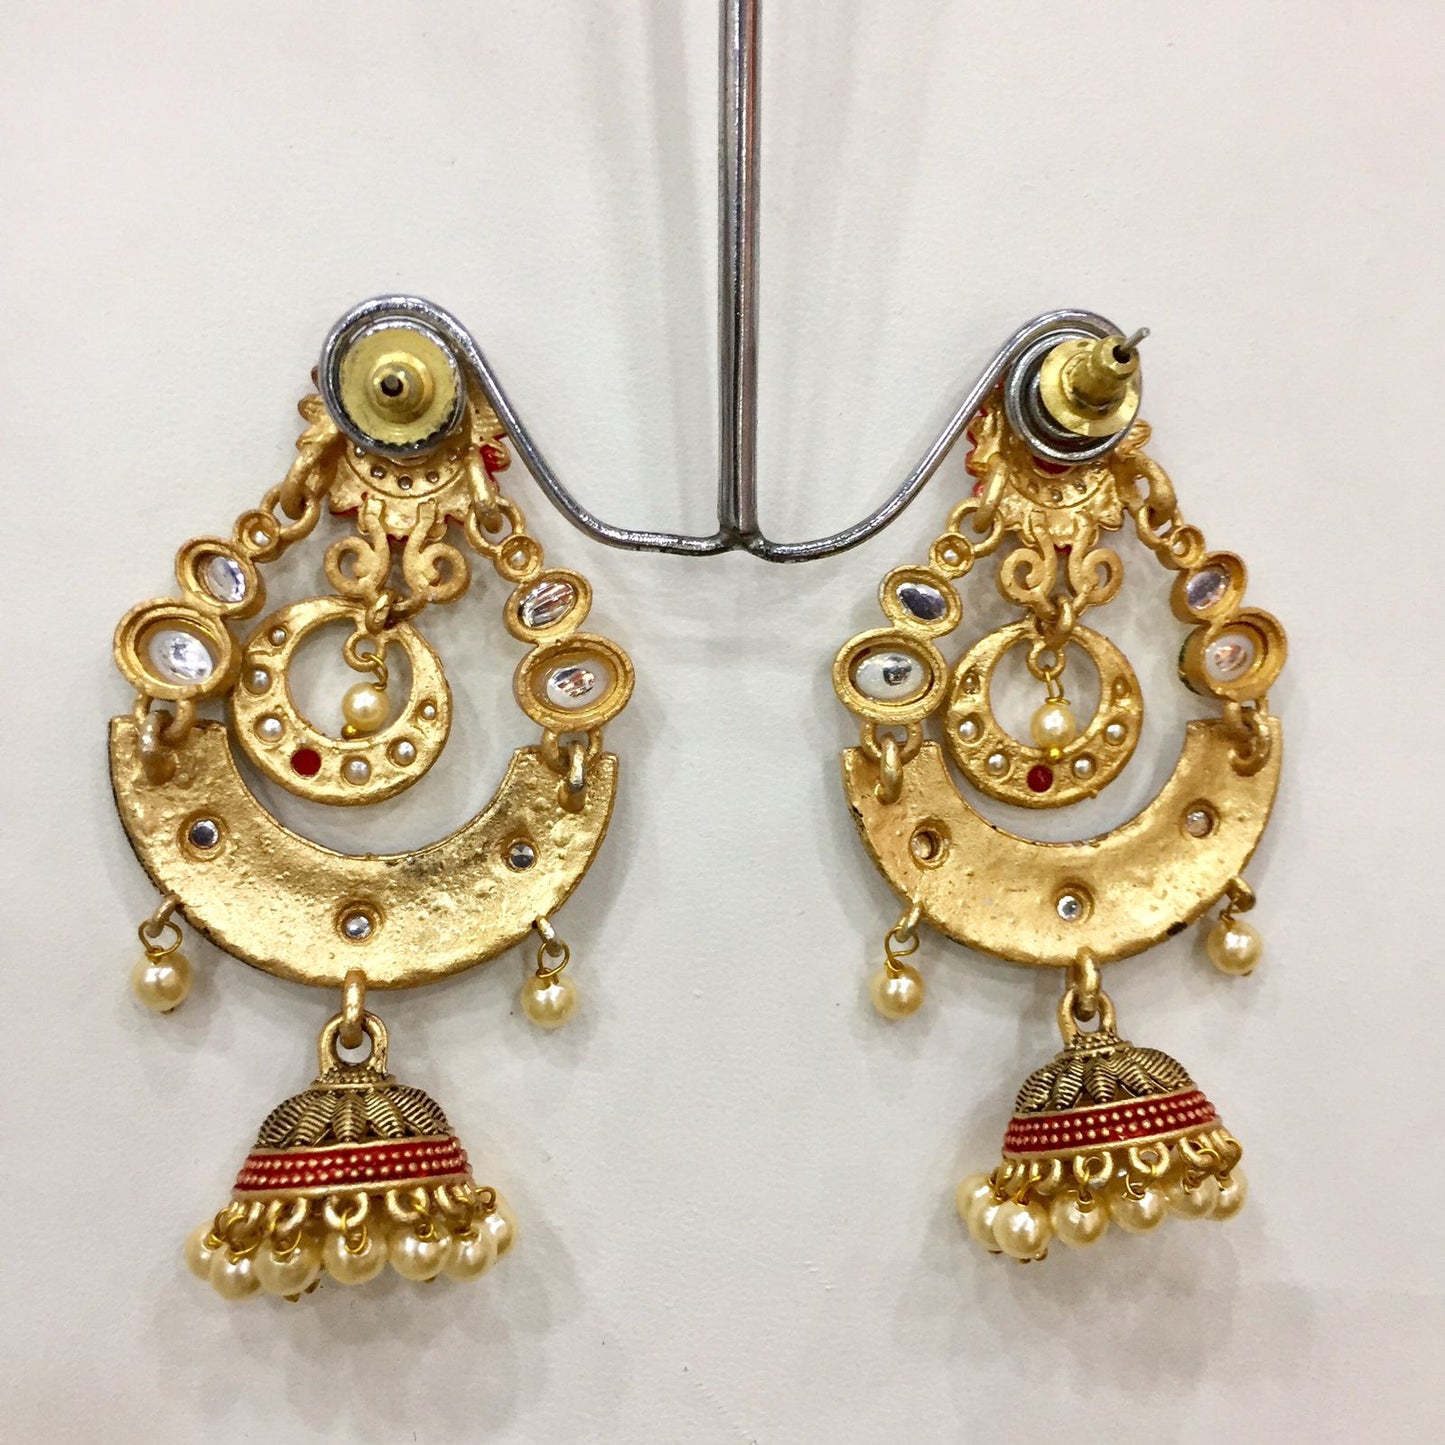 Antique earrings 75545 - Vijay & Sons